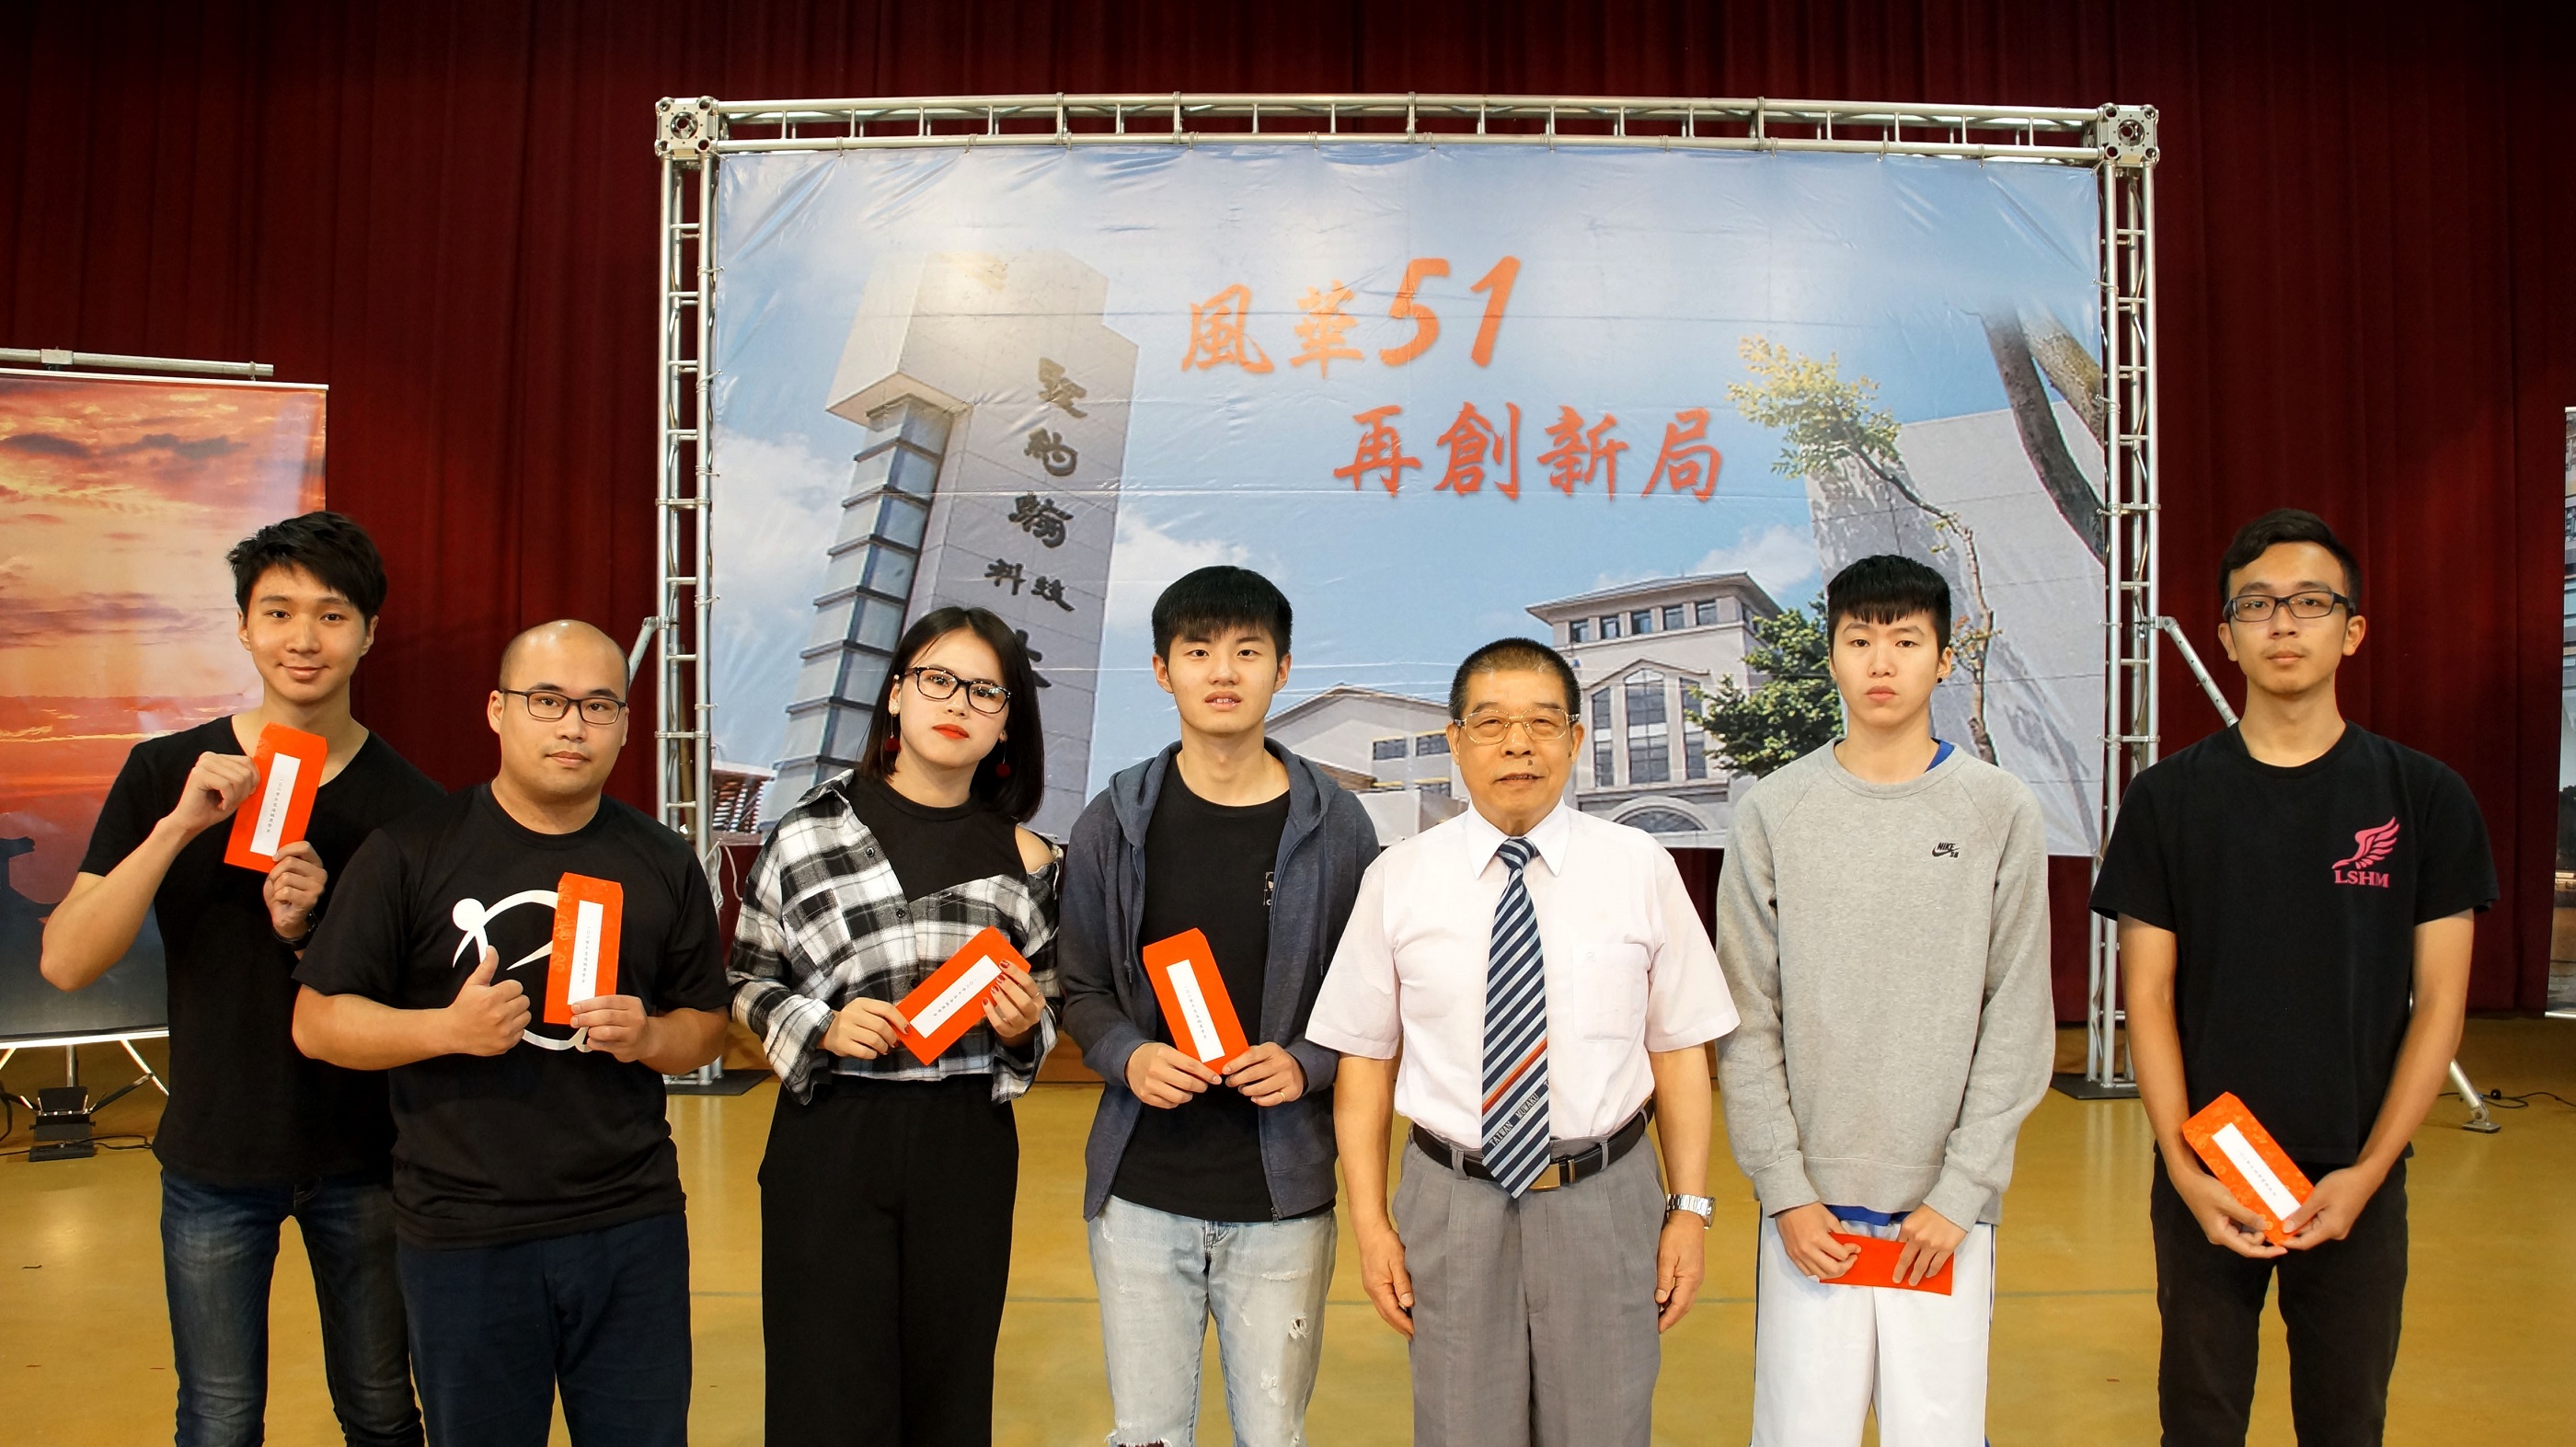 新埔工專沈文賜學長（右三）代表張譽興學長頒發海鷗獎學金給獲獎同學